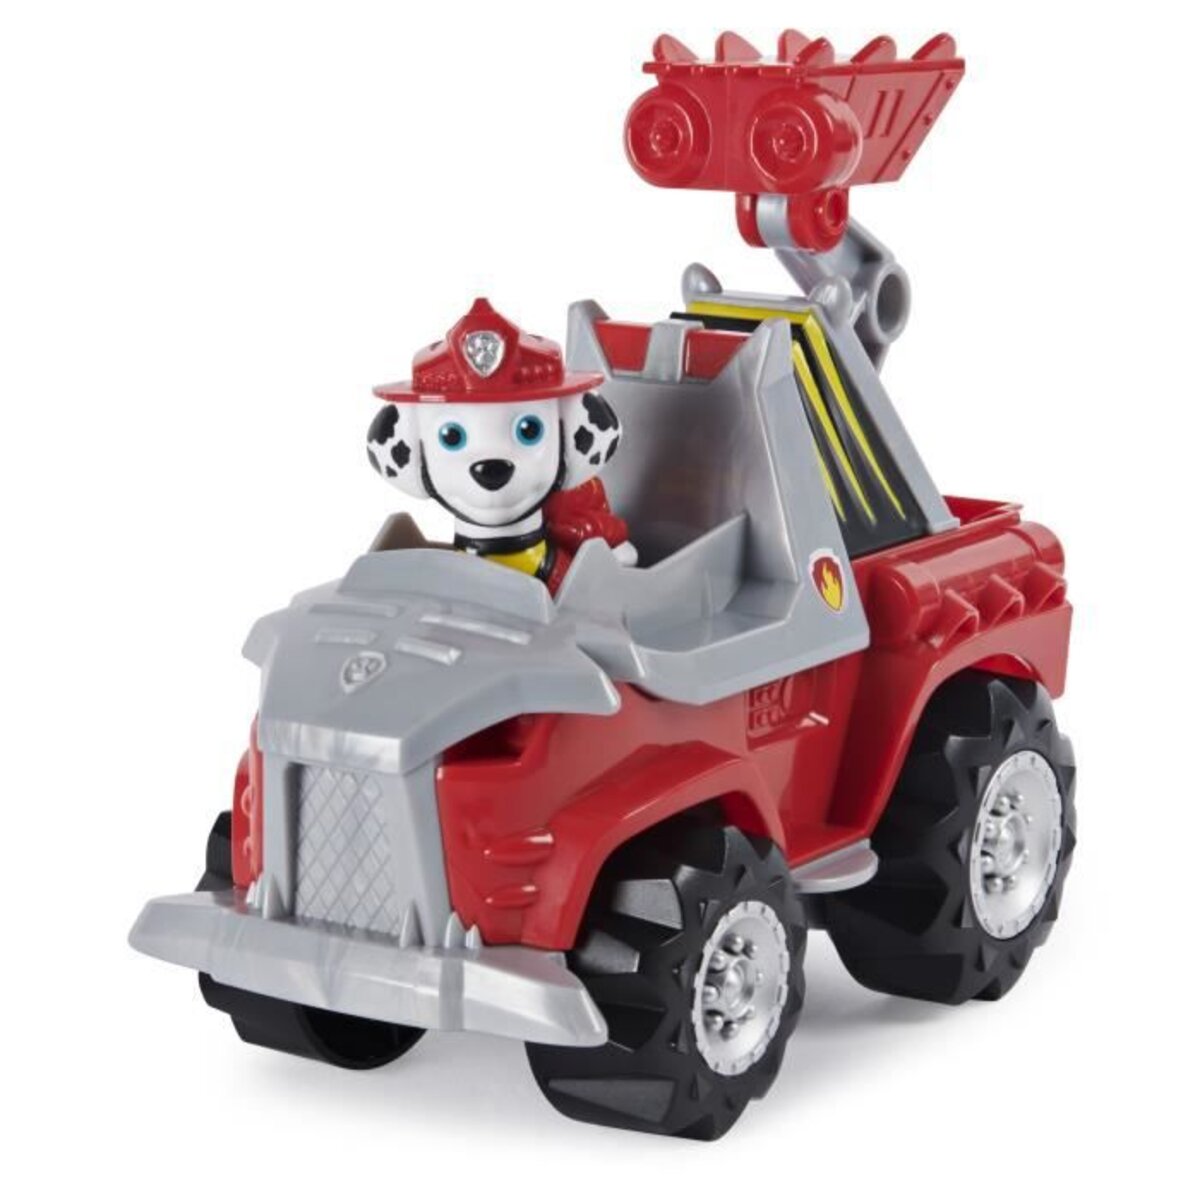 Pat patrouille - vehicule + figurine deluxe marcus dino rescue paw patrol -  6059518 - voiture a remonter jeu jouet enfant 3 ans - La Poste